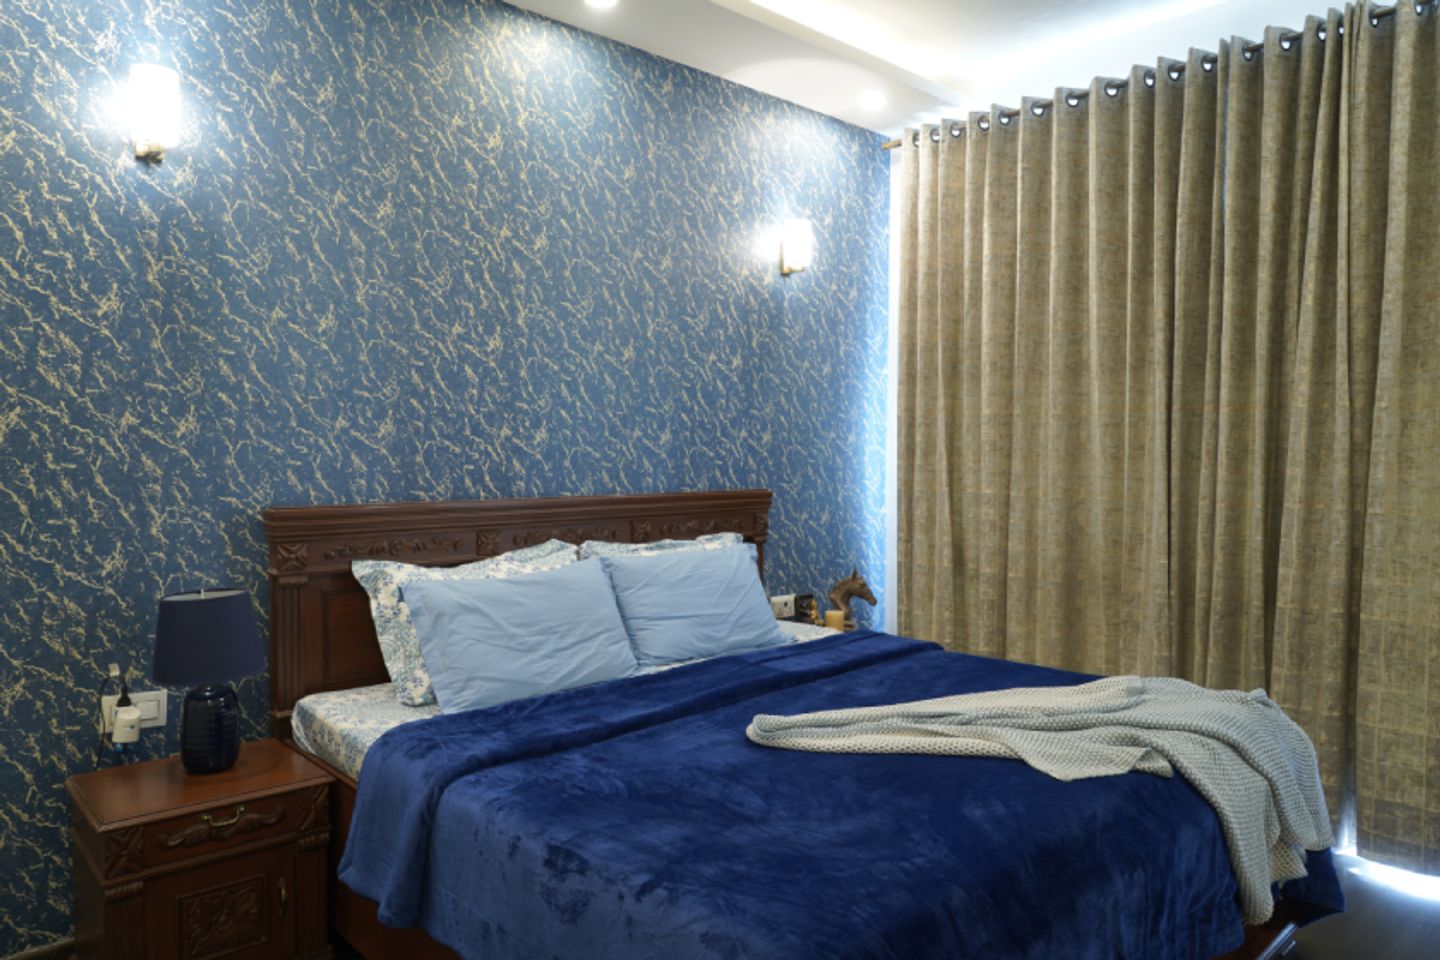 Blue Bedroom Wallpaper For Modern Houses - Livspace